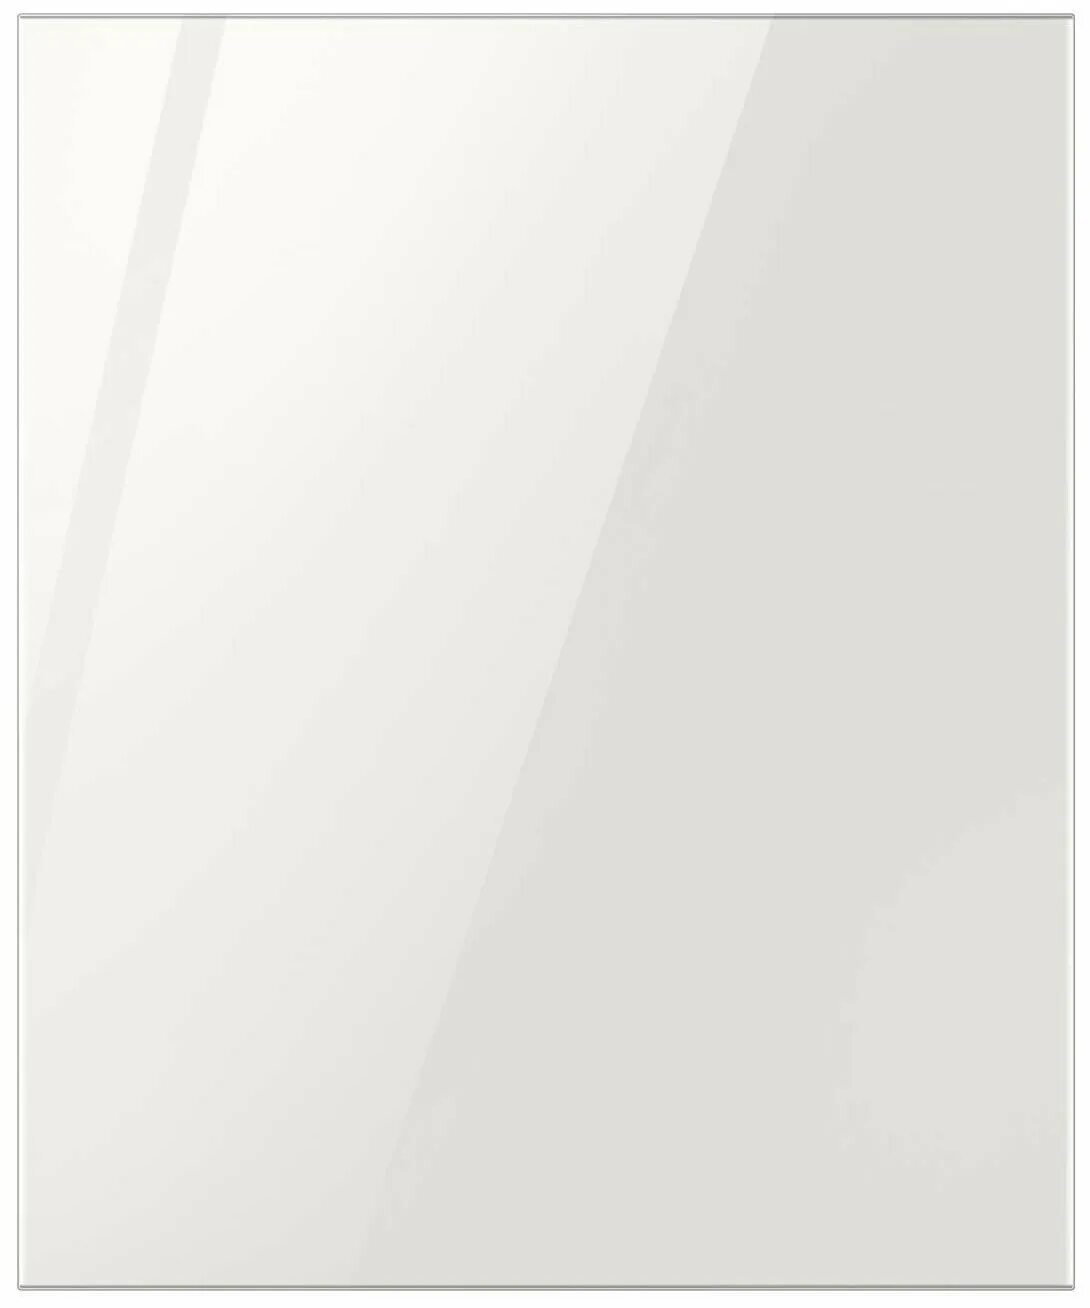 Панель для холодильника Samsung ra-b23dbb35gg. Панели самсунг bespoke. Нижняя панель для холодильника Samsung bespoke ra-b23ebb12gg. Панель Samsung ra-b23dbb (стекло) бургунди.